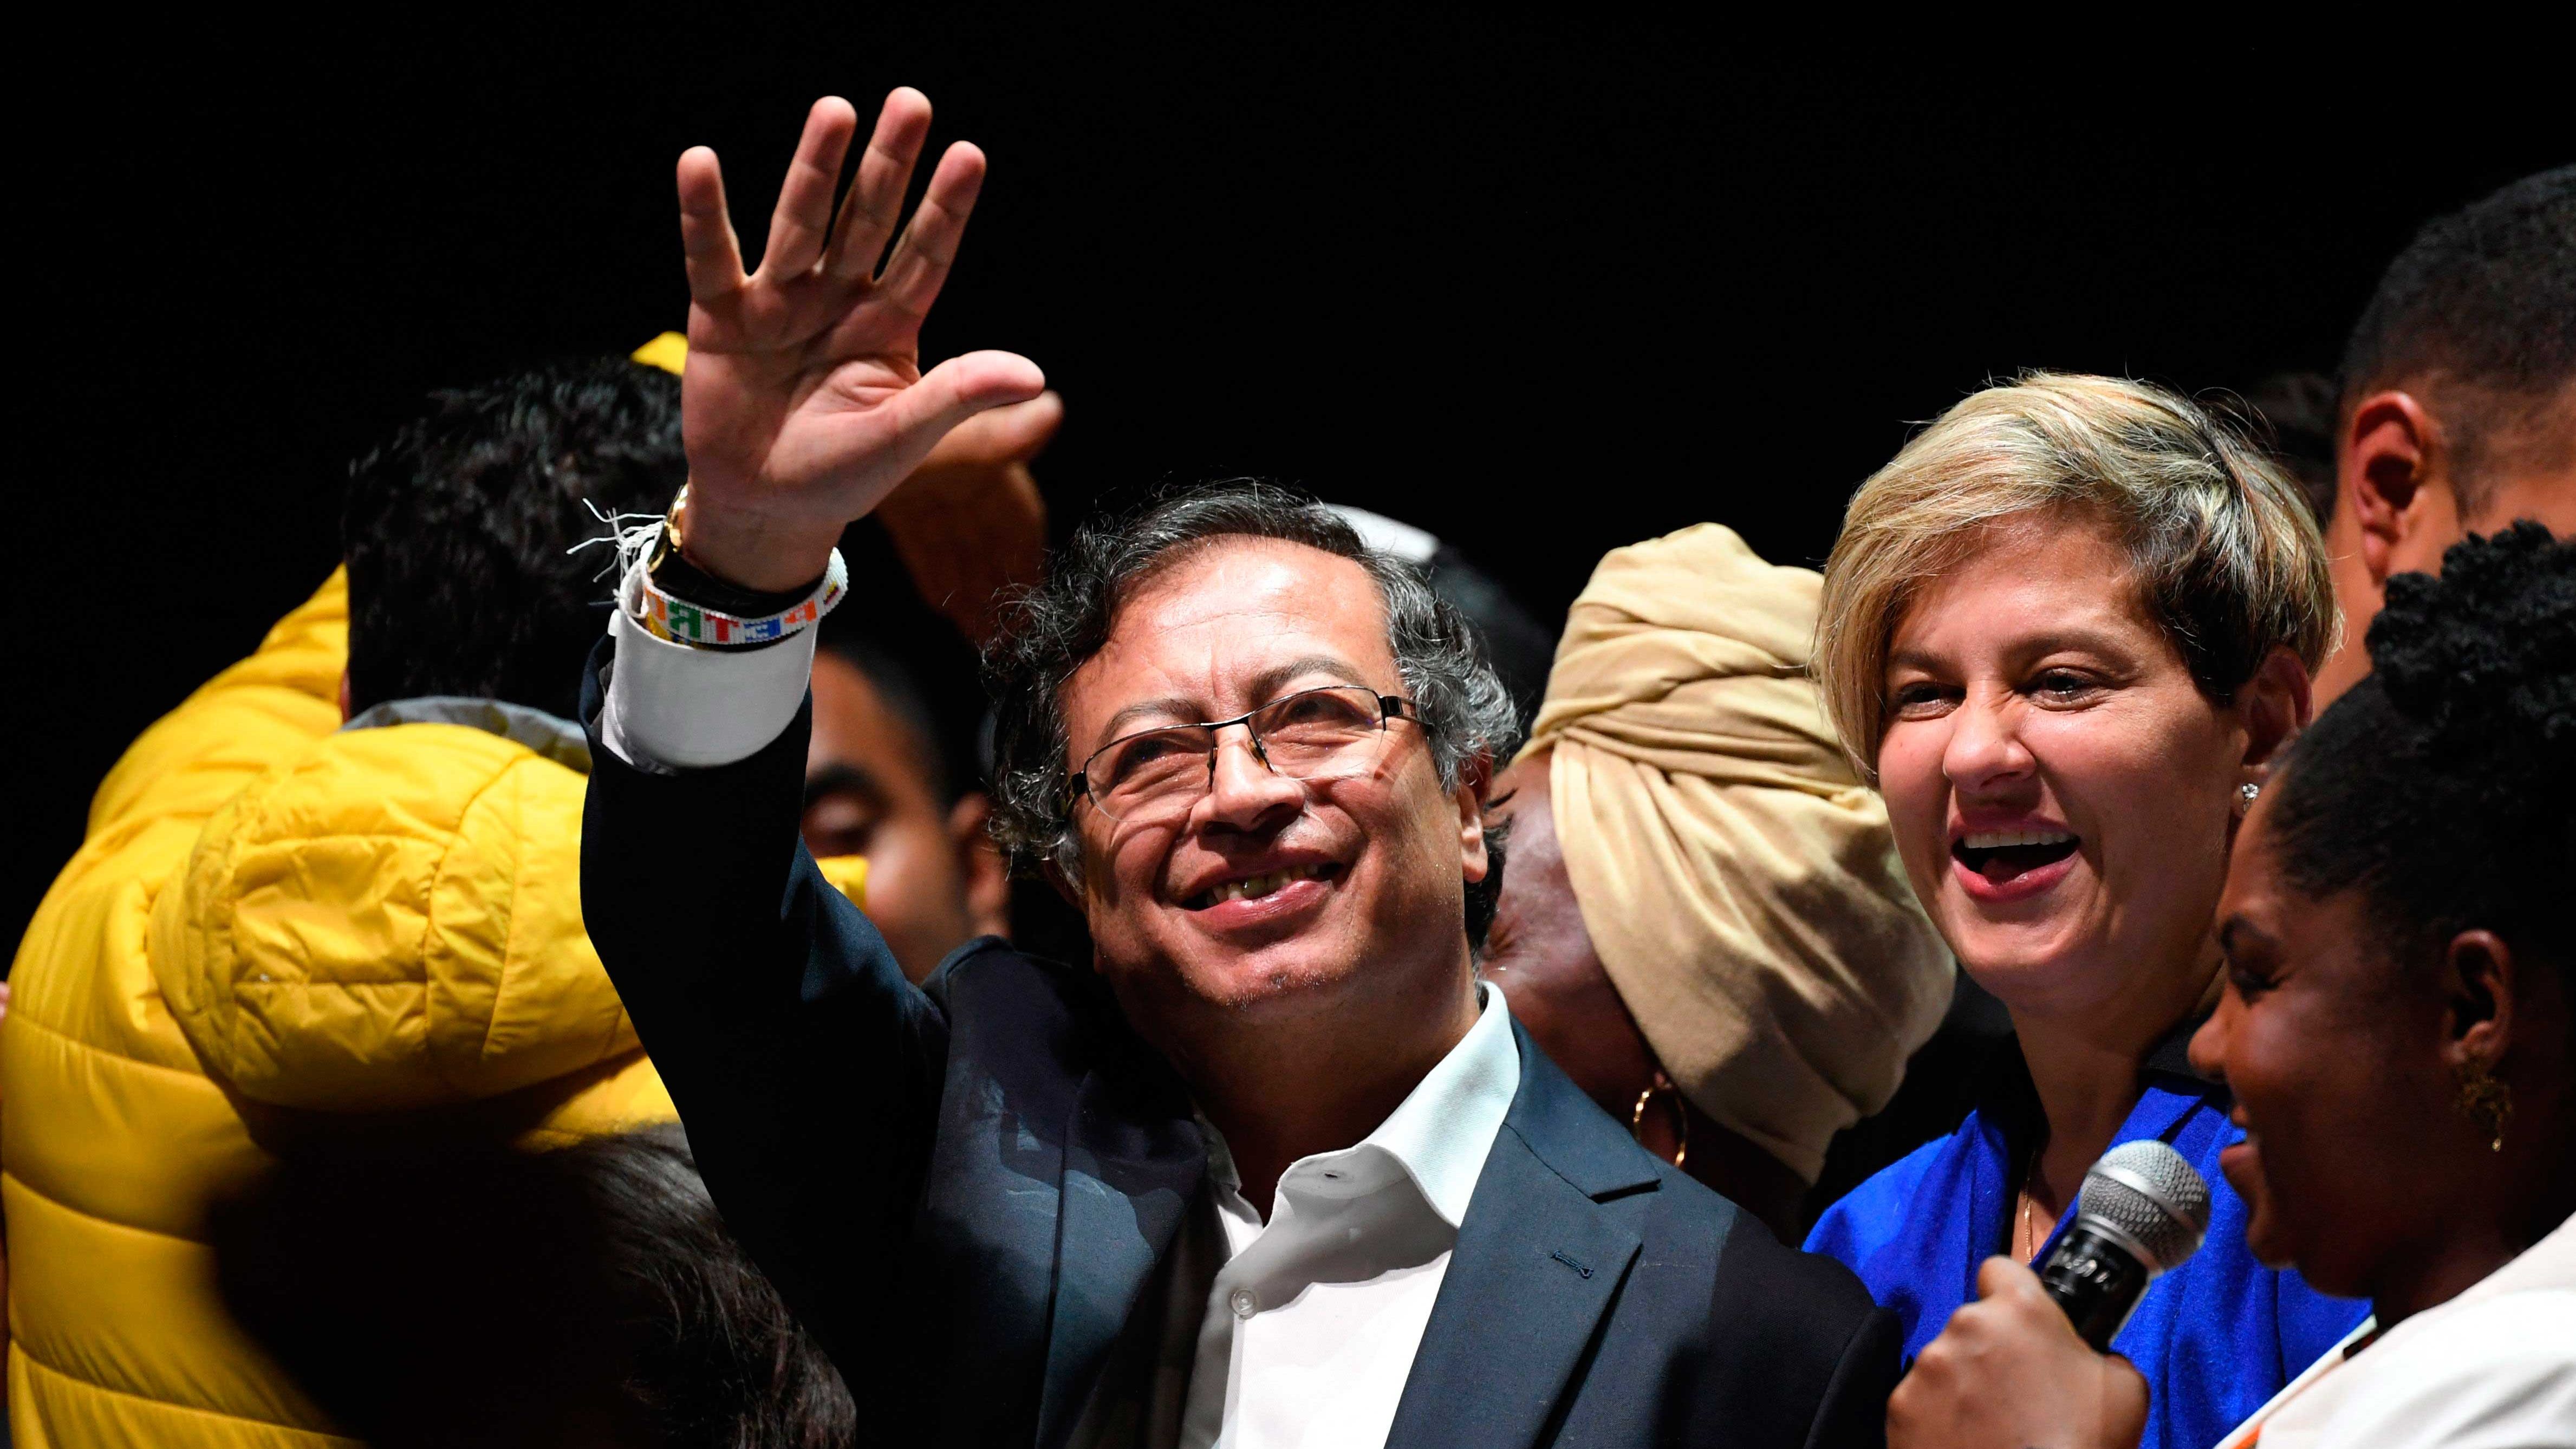 Resumen y resultados de las elecciones colombianas de 2022 ganadas por Petro: así fue la votación